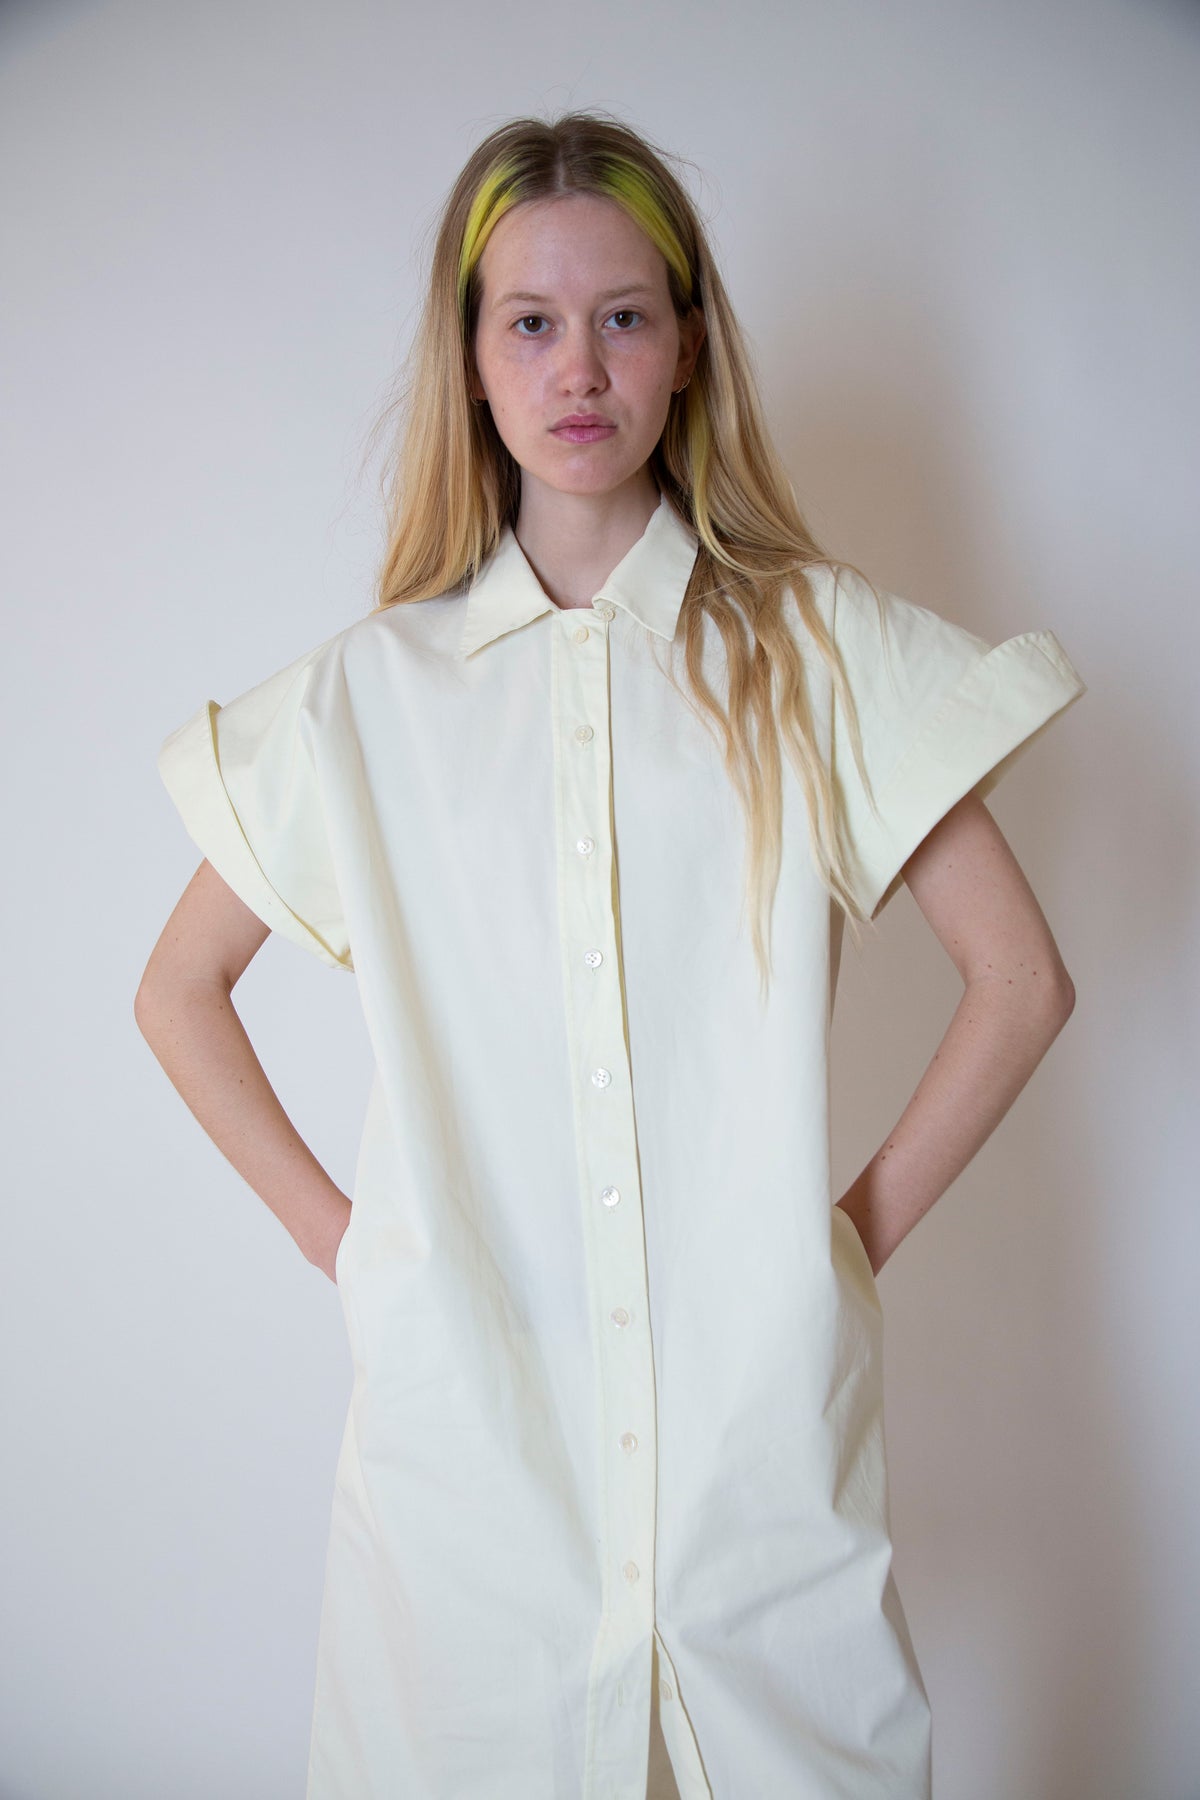 Yves Saint Laurent cotton dress